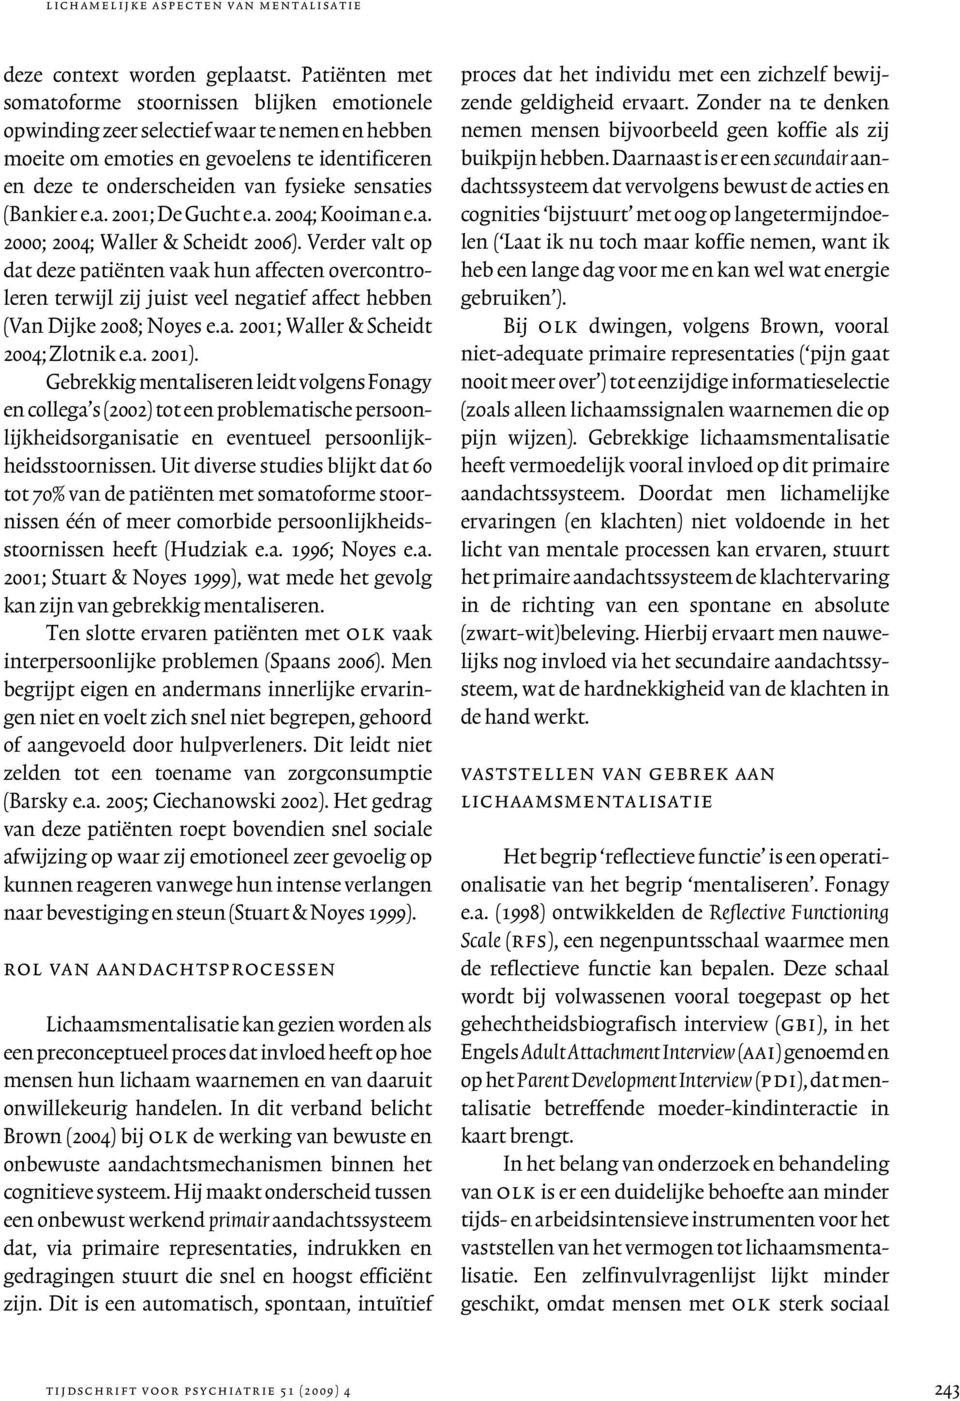 sensaties (Bankier e.a. 2001; De Gucht e.a. 2004; Kooiman e.a. 2000; 2004; Waller & Scheidt 2006).